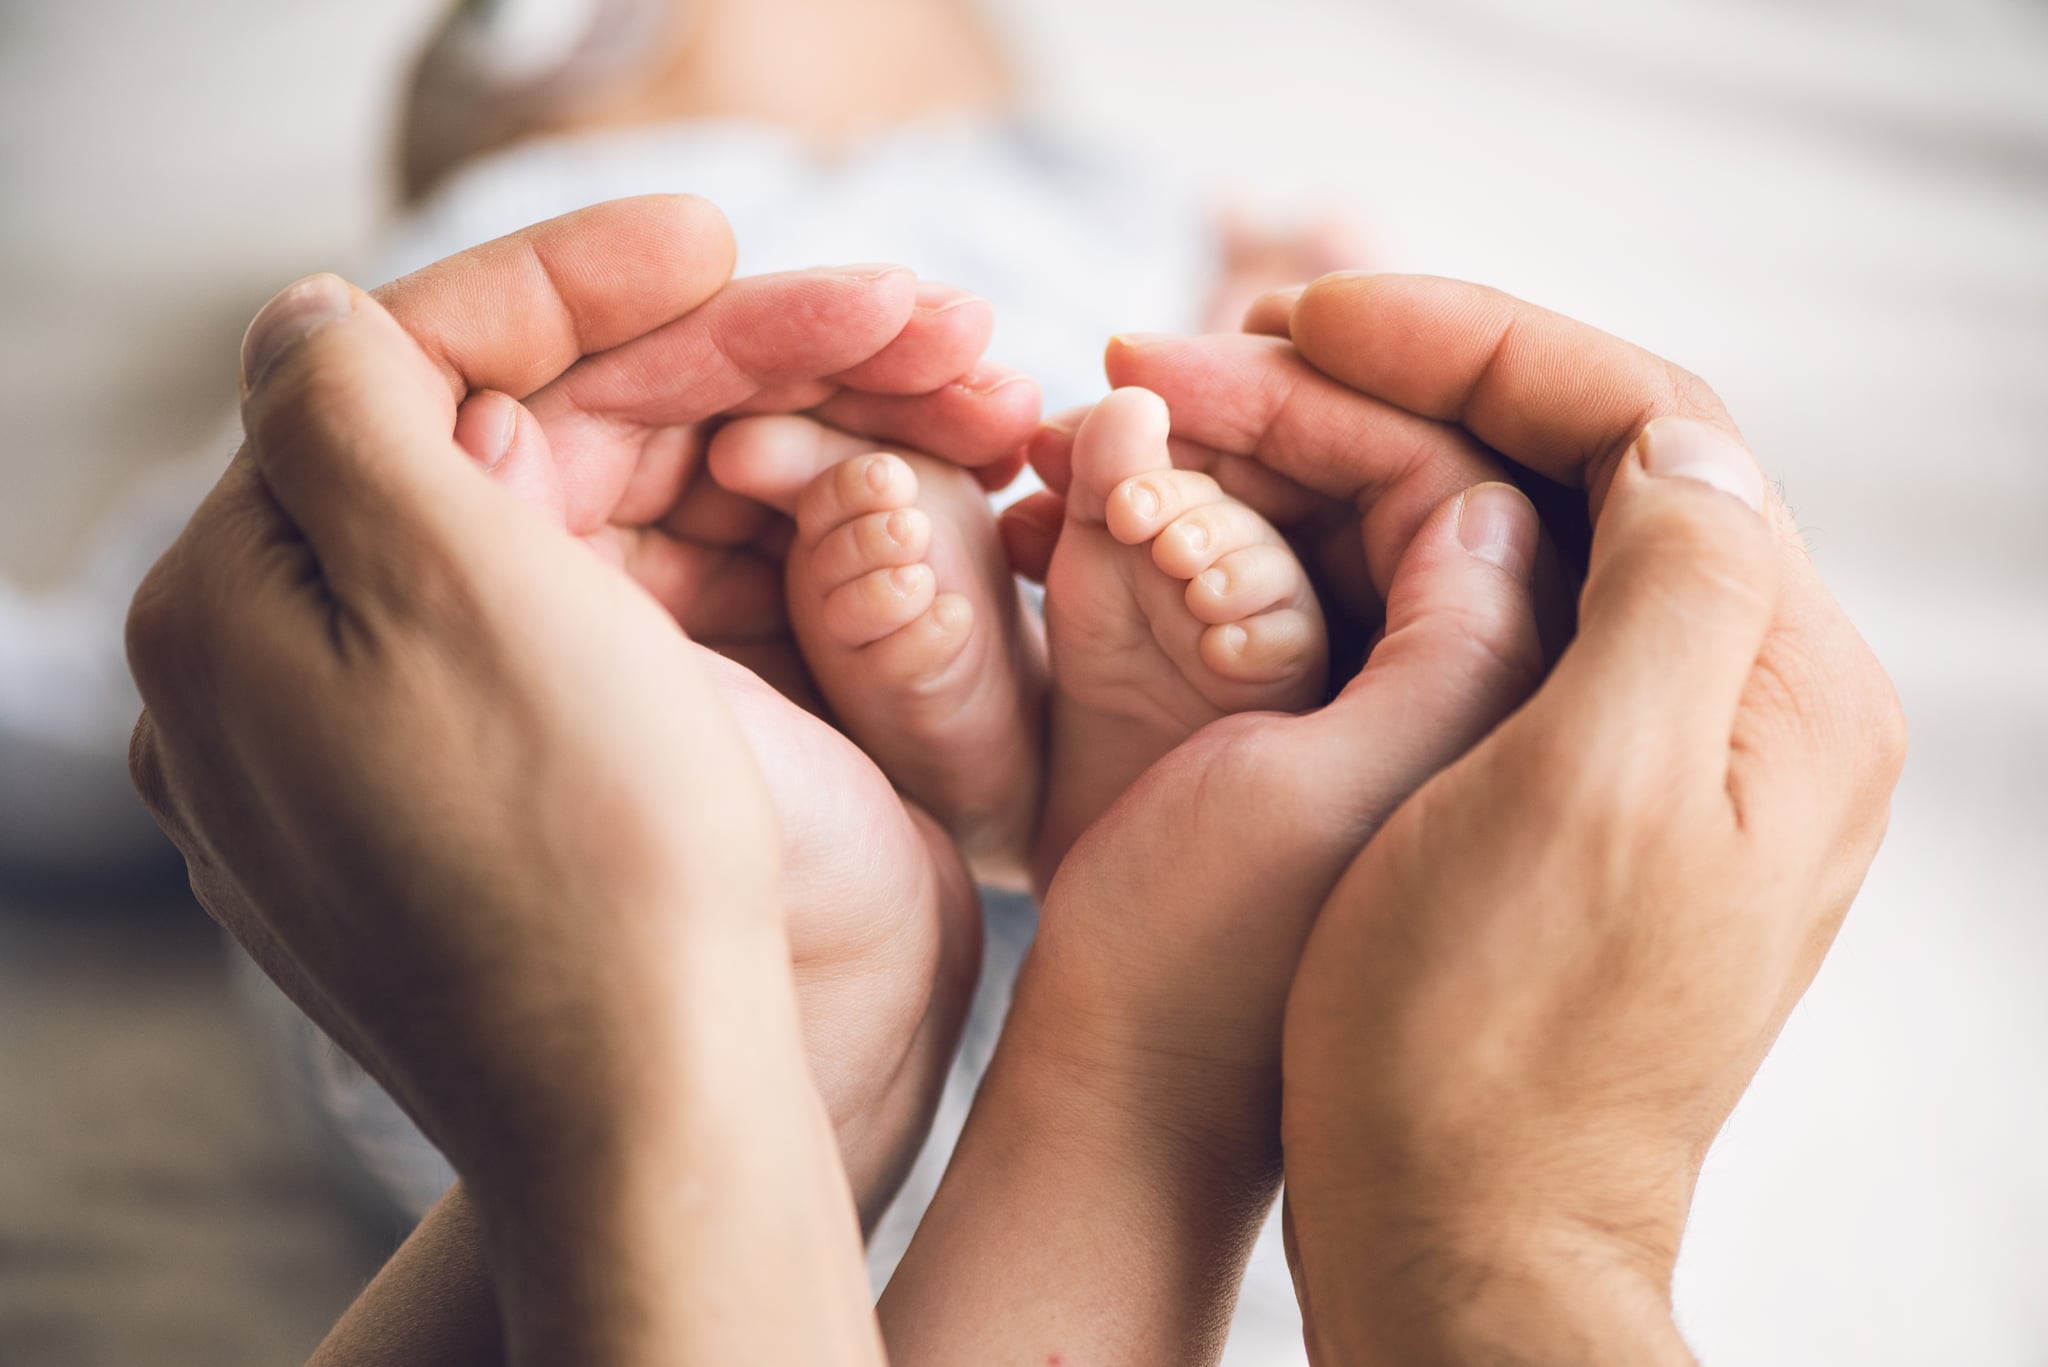 Little baby feet in parents hands